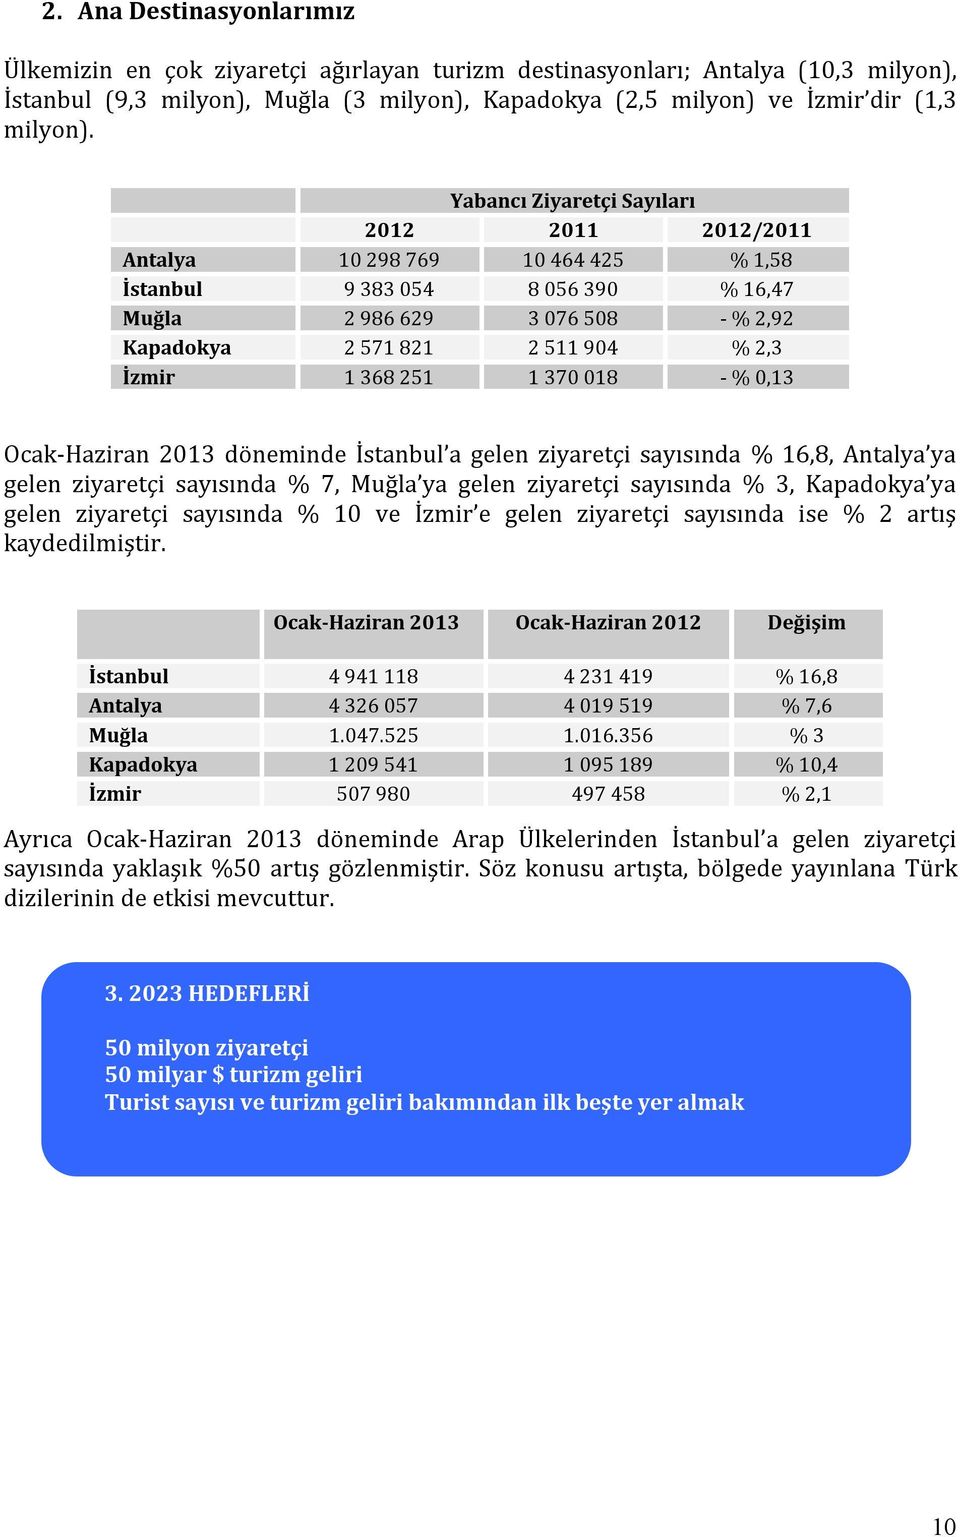 368 251 1 370 018 - % 0,13 Ocak-Haziran 2013 döneminde İstanbul a gelen ziyaretçi sayısında % 16,8, Antalya ya gelen ziyaretçi sayısında % 7, Muğla ya gelen ziyaretçi sayısında % 3, Kapadokya ya